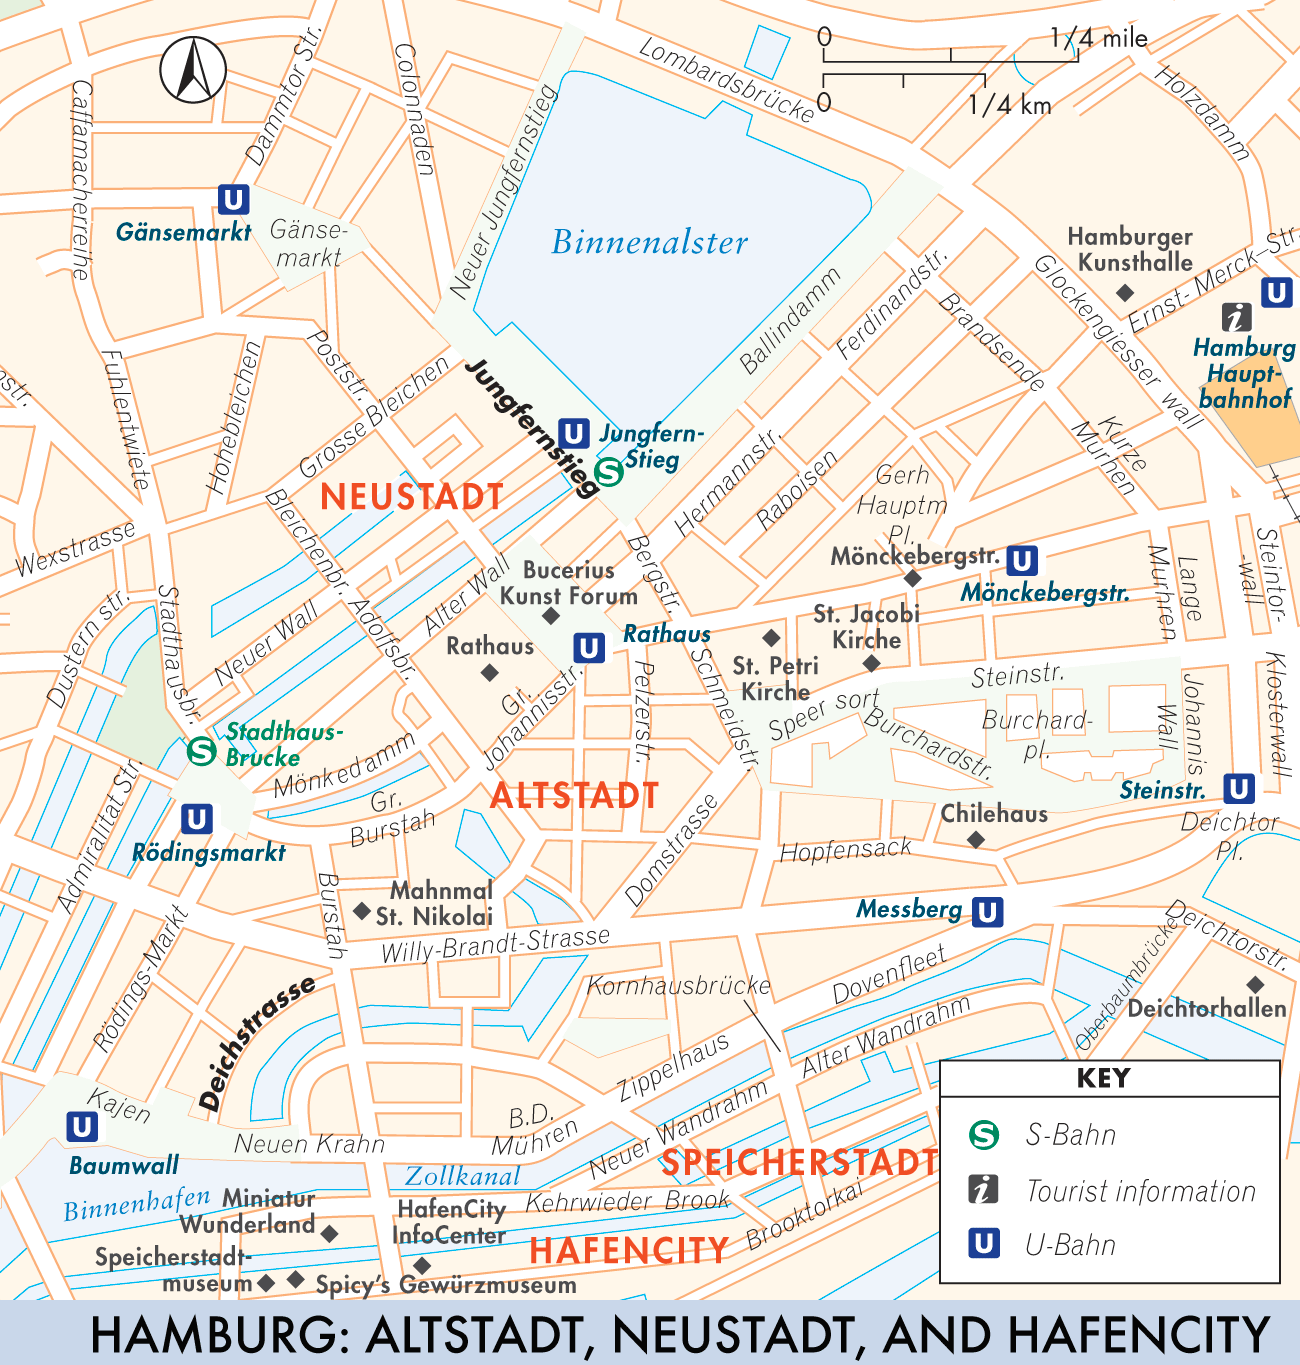 Hamburg: Altstadt, Neustadt, and Hafencity